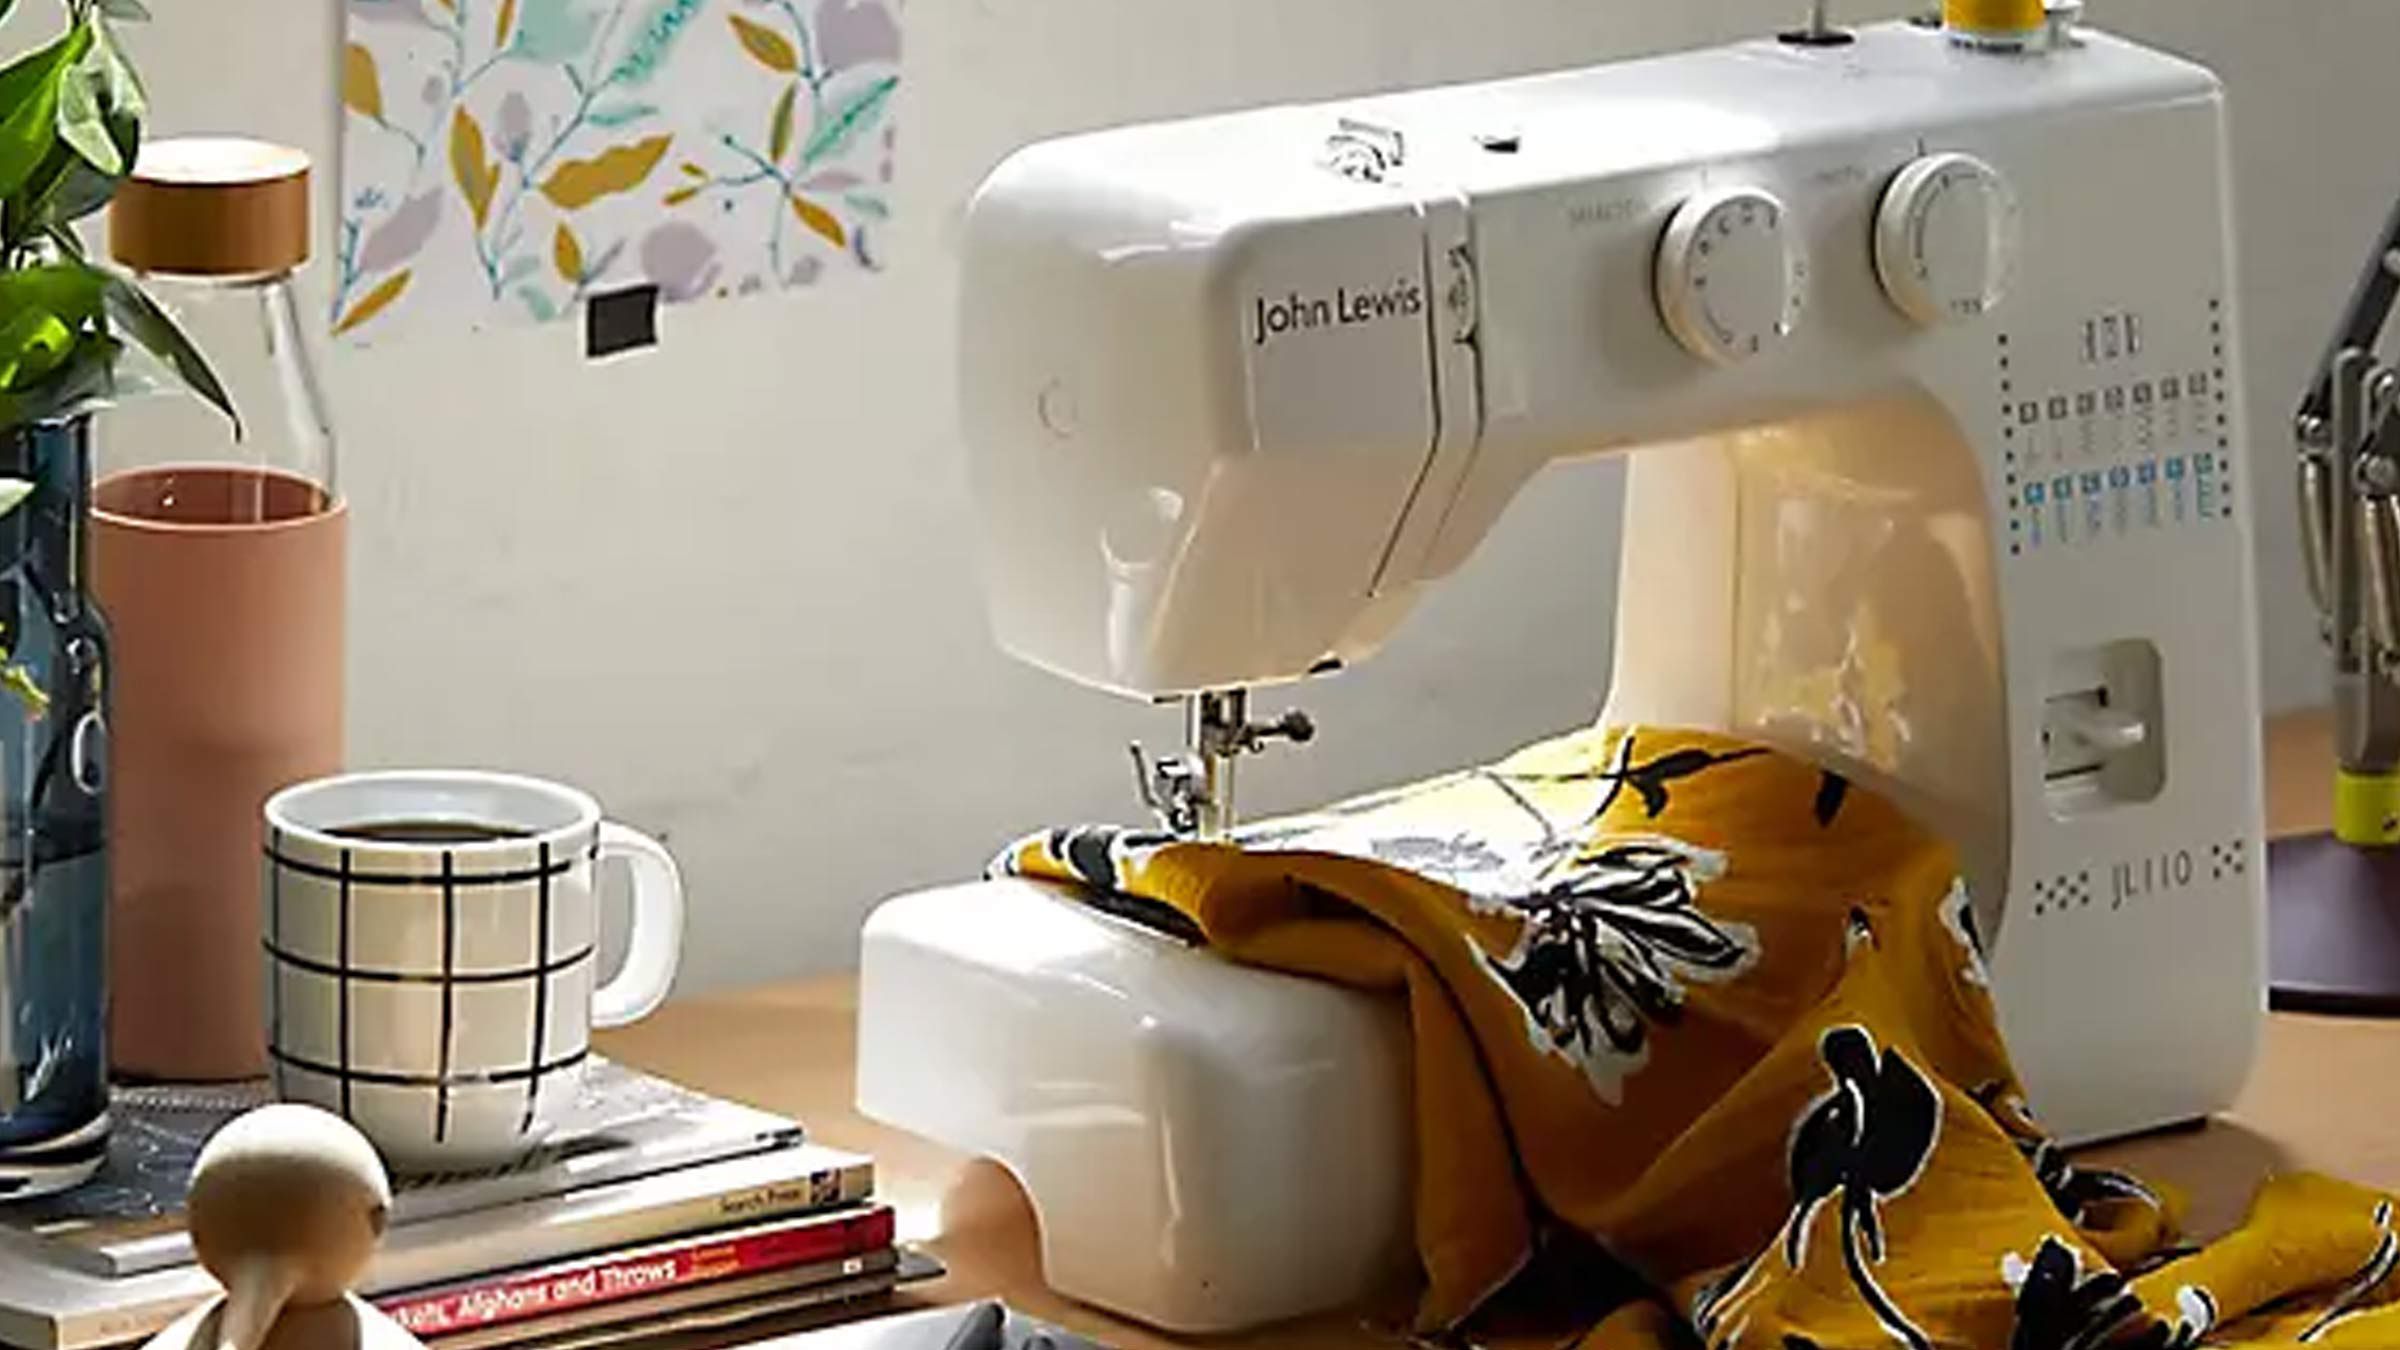 Haberdashery | Sewing, Knitting & Crafts | John Lewis & Partners